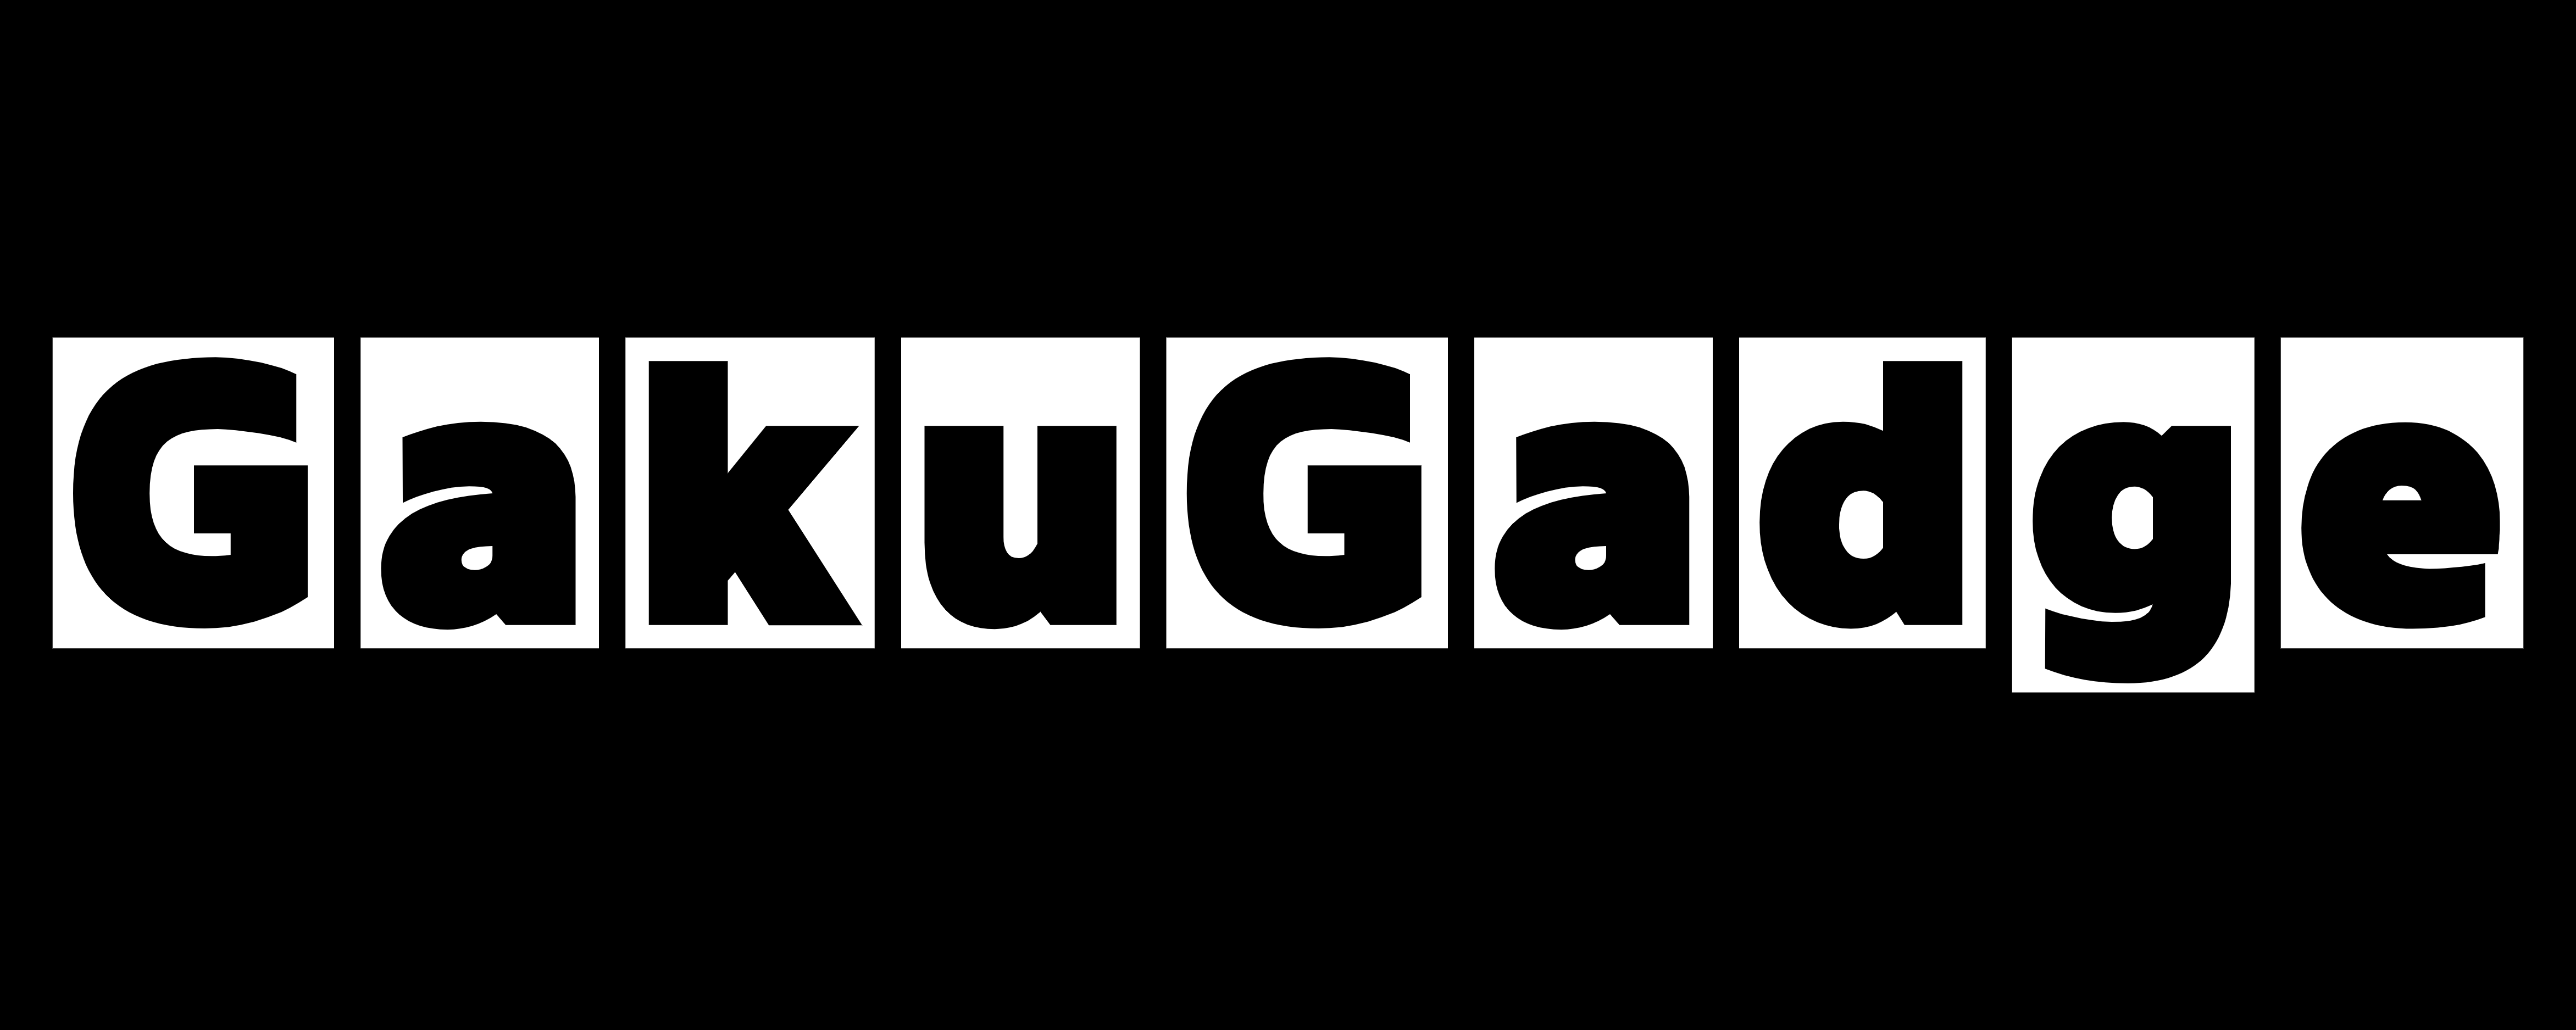 GakuGadge（ガクガジェ）